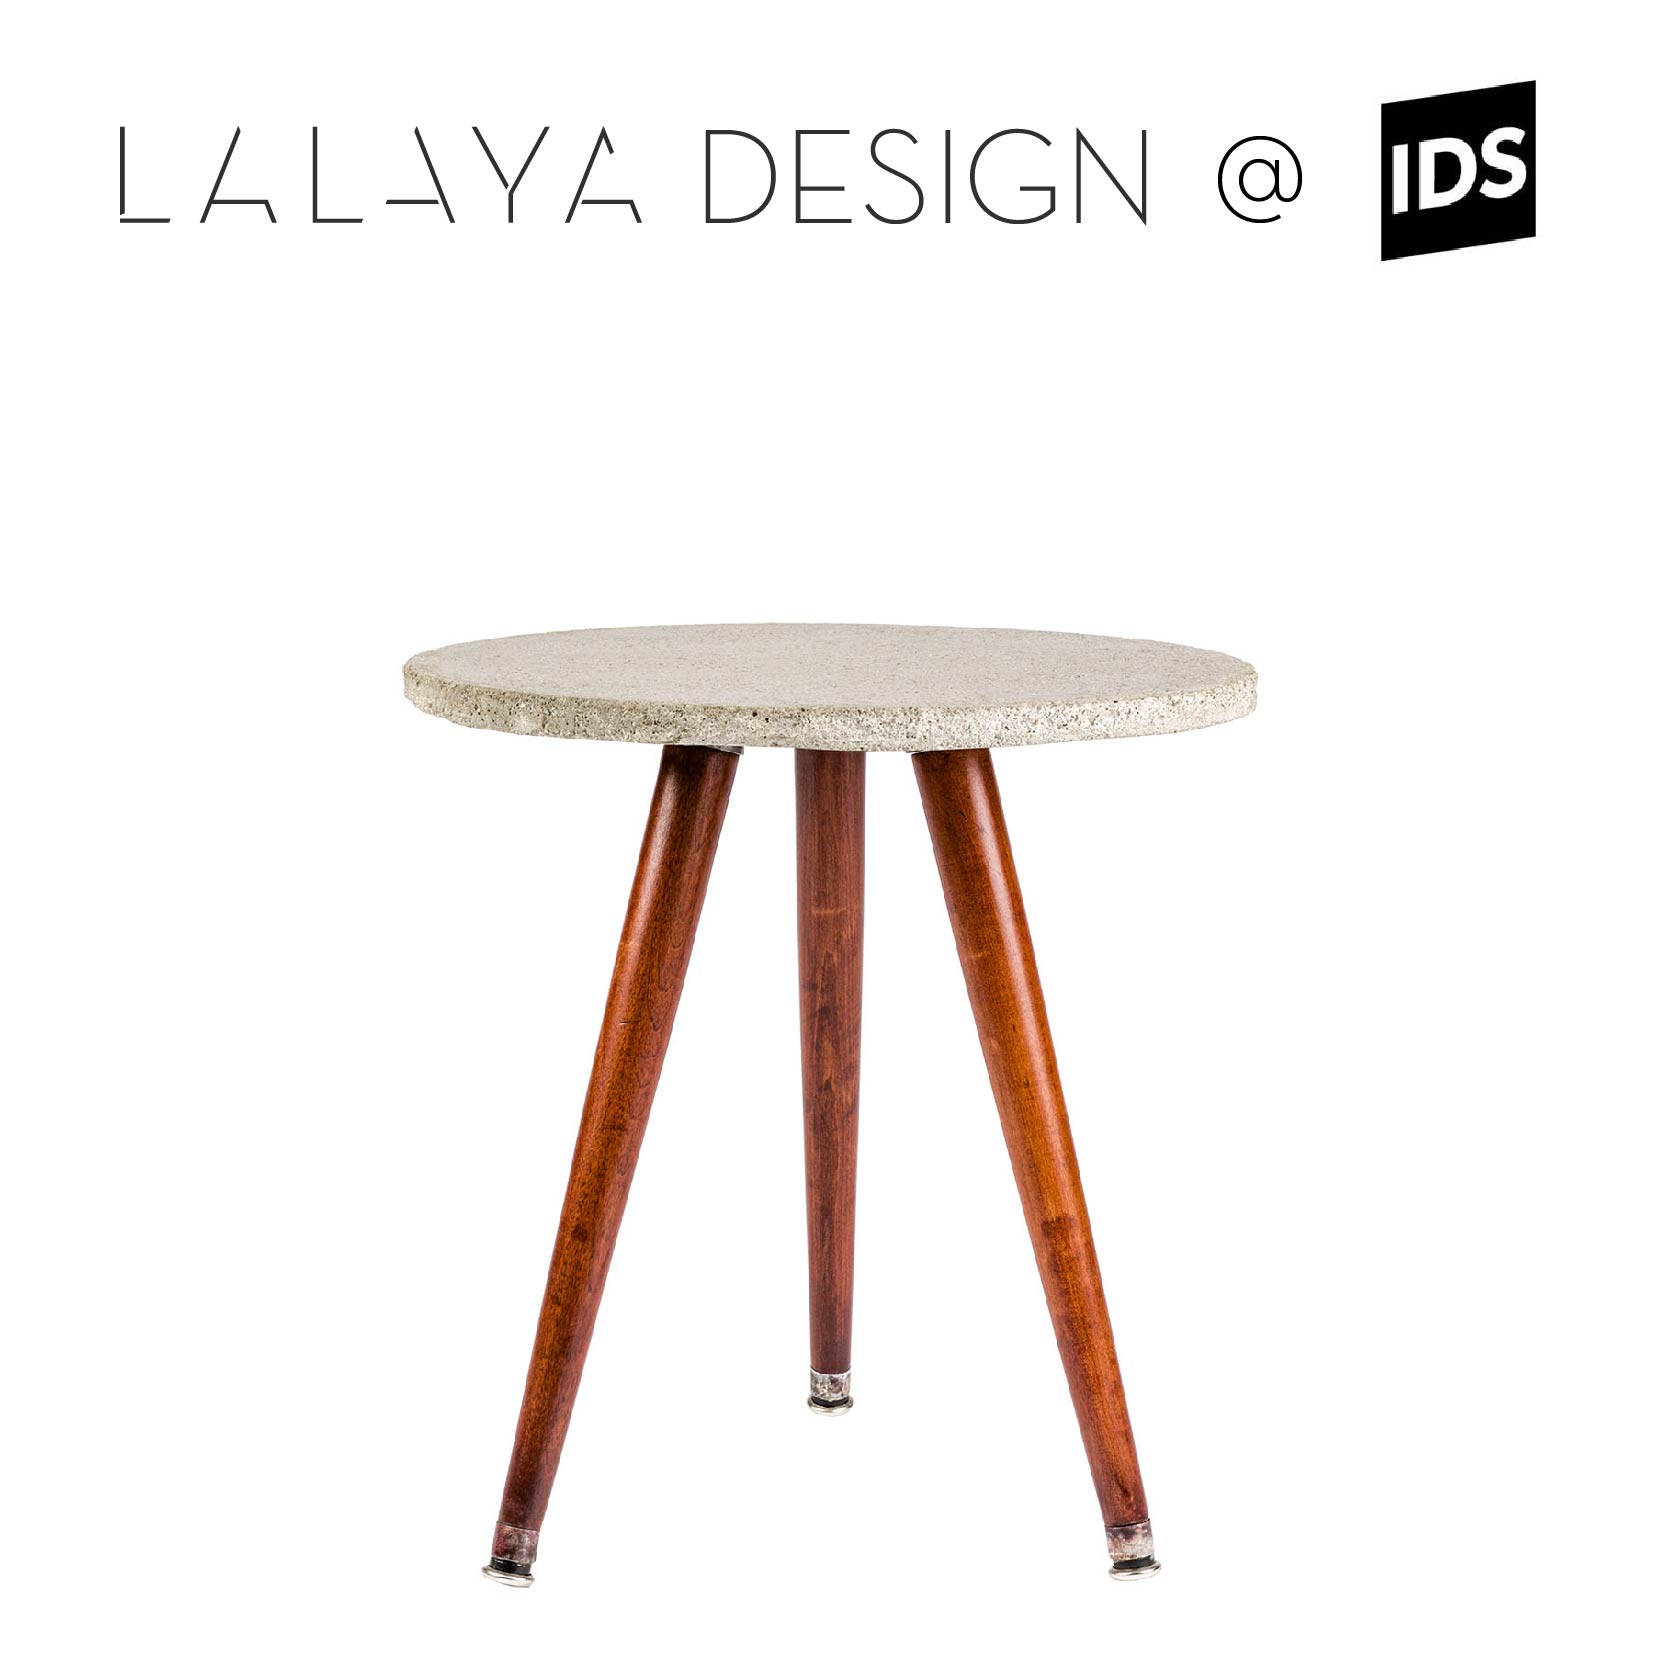 LALAYA Design Debuts at IDS 2018